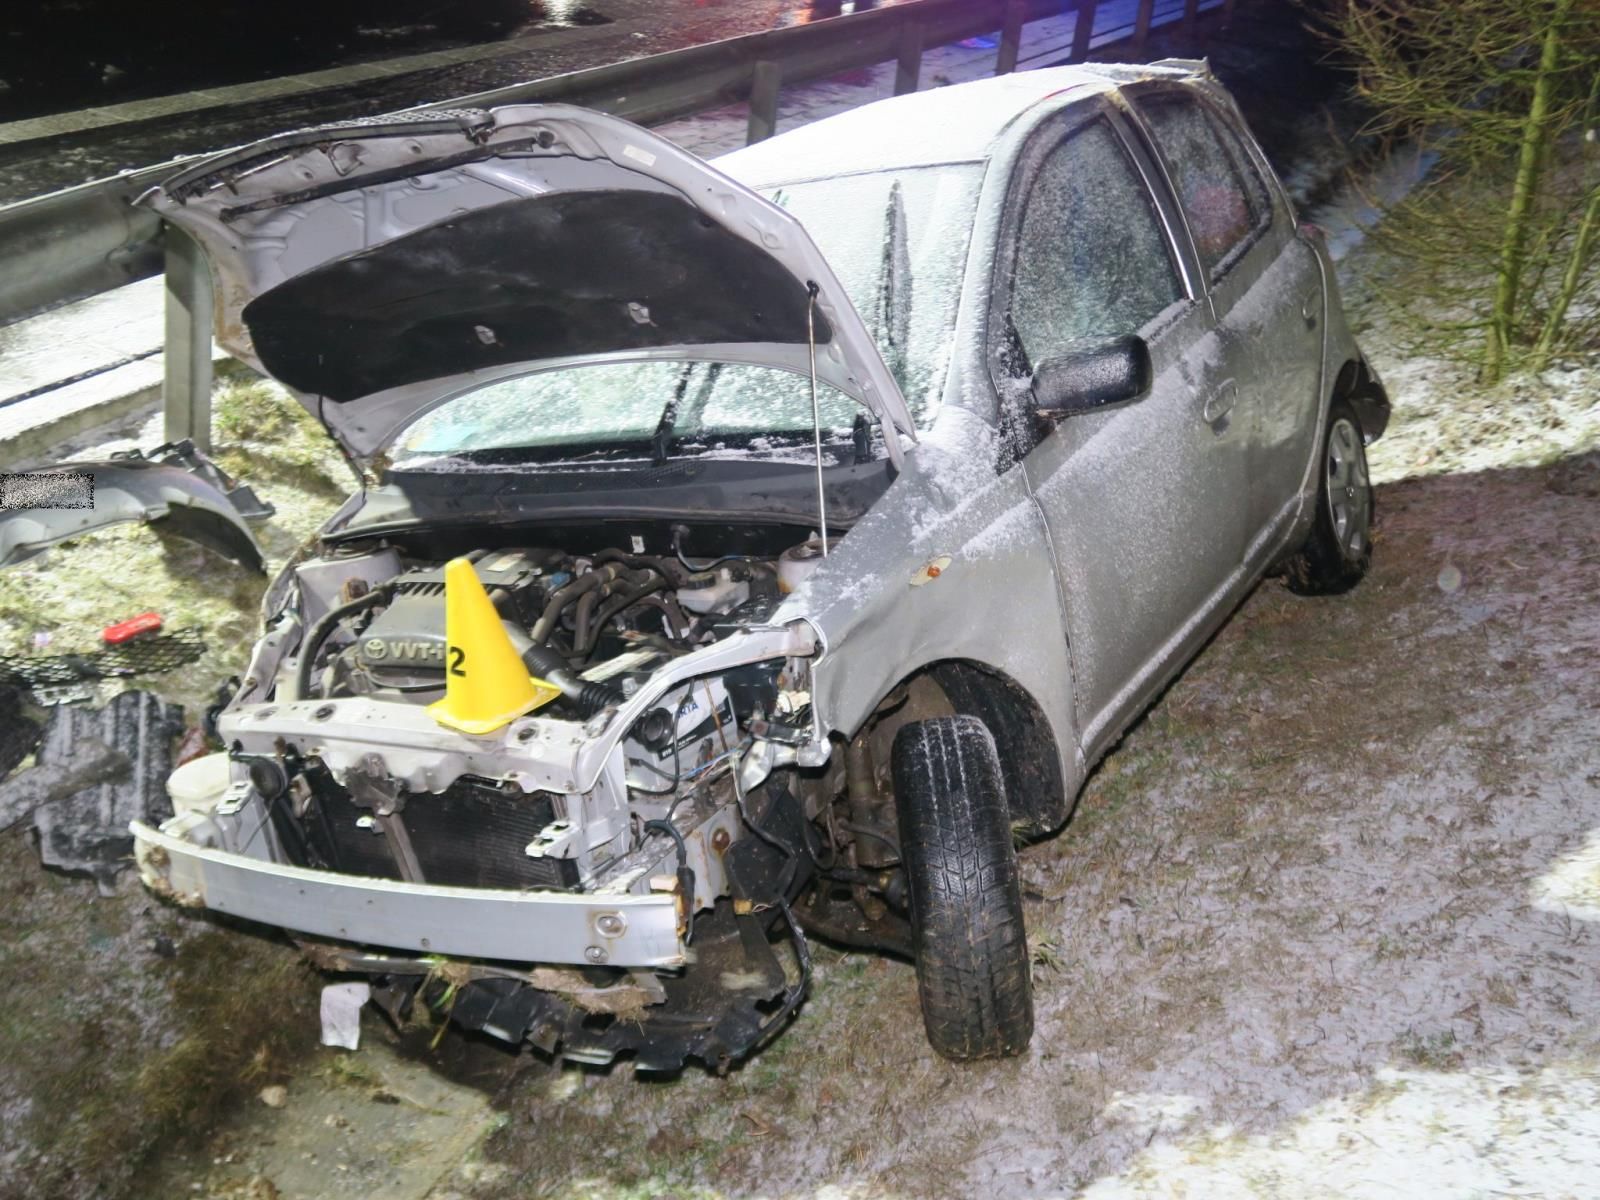 Sokolovsko: Dopravní nehoda si naštěstí vyžádala jen jedno lehké zranění